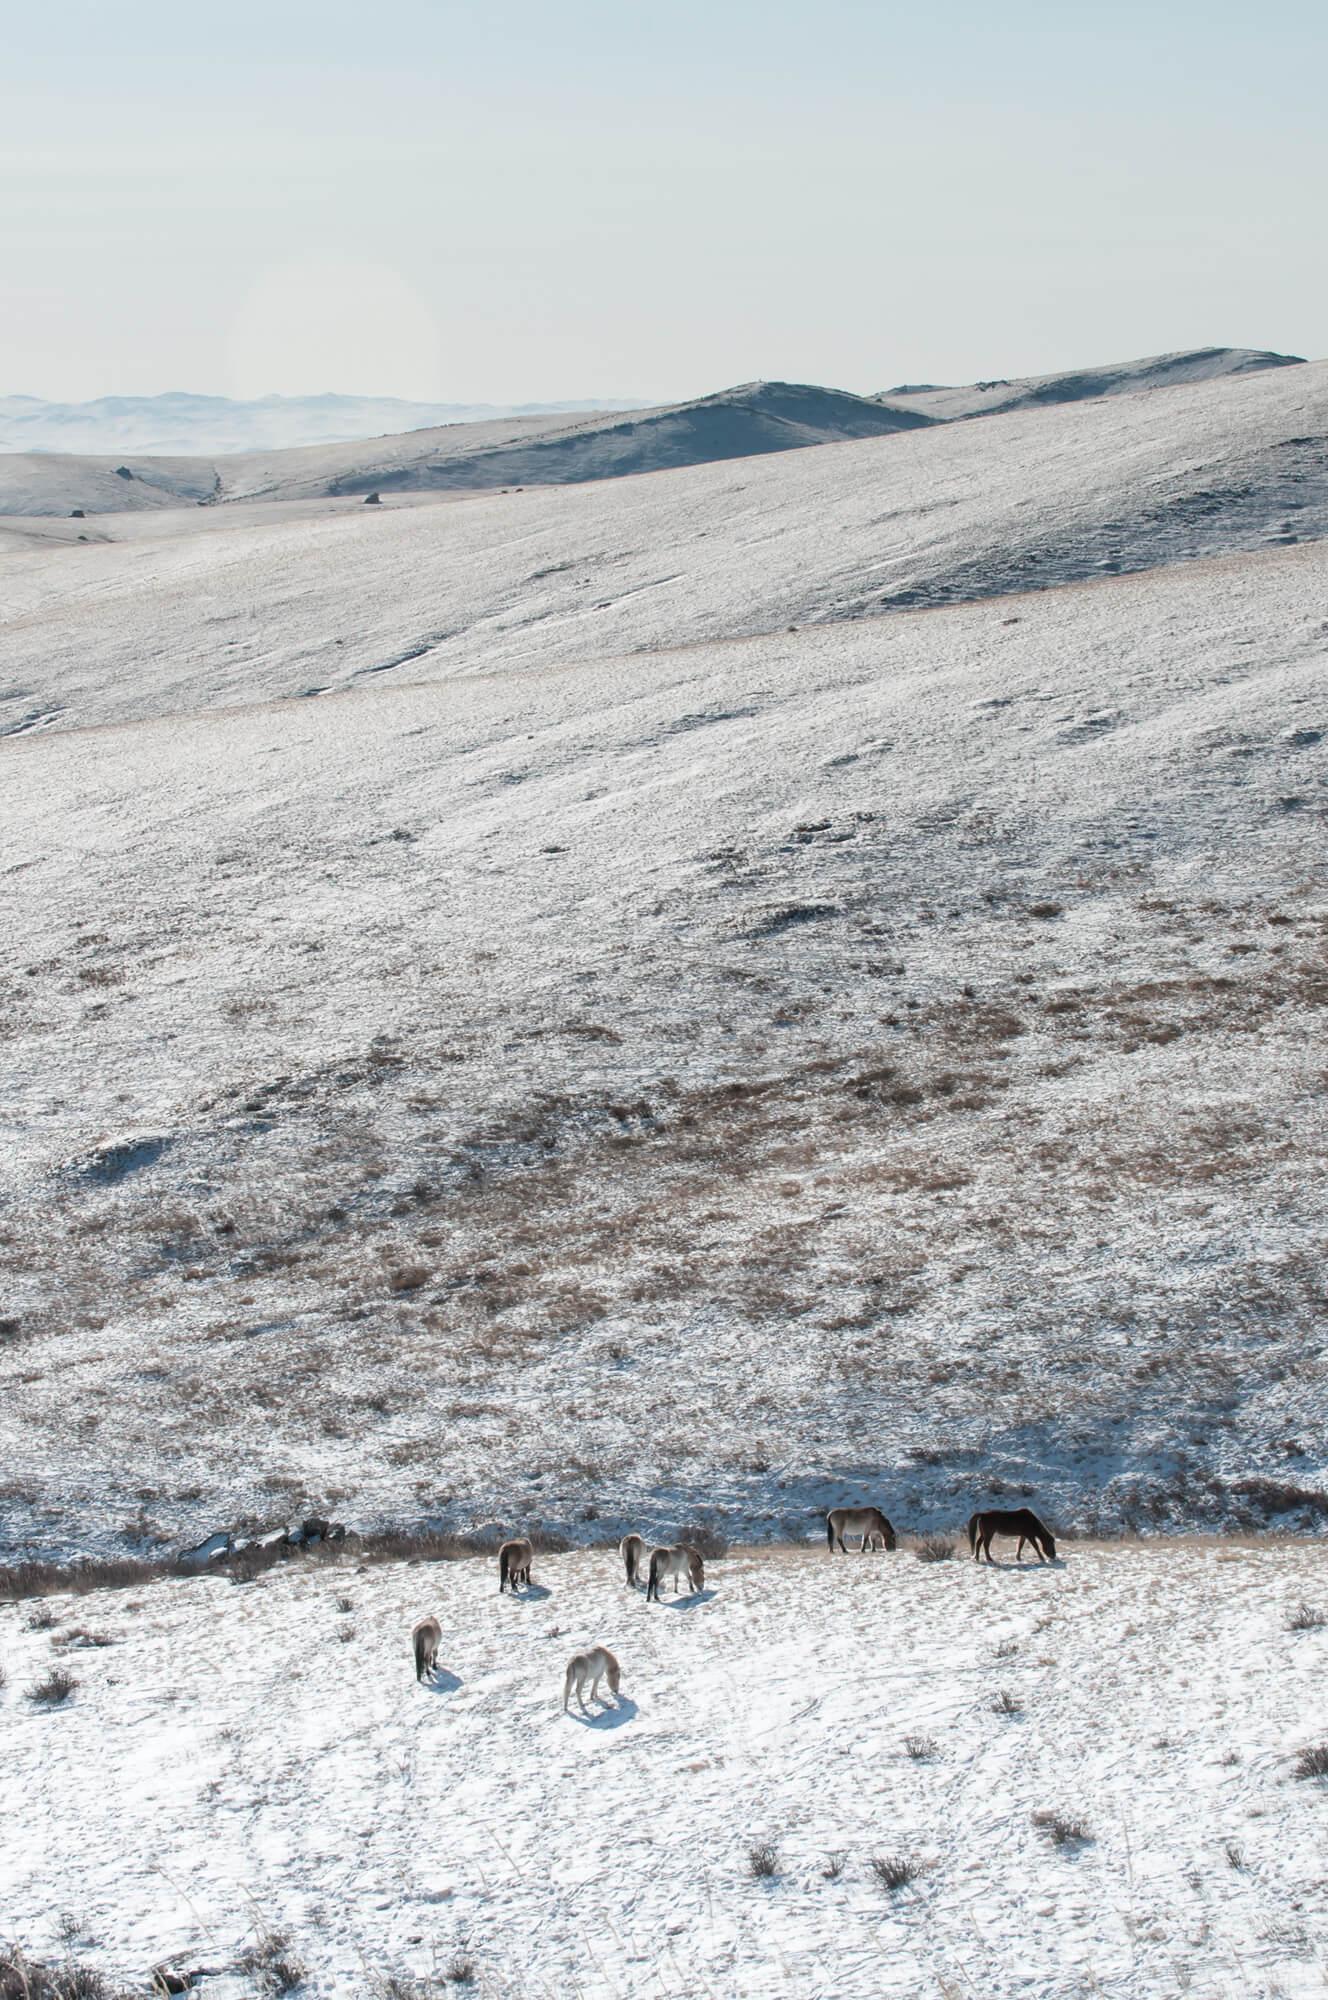 منتزه هوستاي الوطني في منغوليا مغطى بالثلوج، مع قطيع من خيول برجفالسكي ترعى في المقدمة. المصور: أستريد هاريسون      المكان: منغوليا